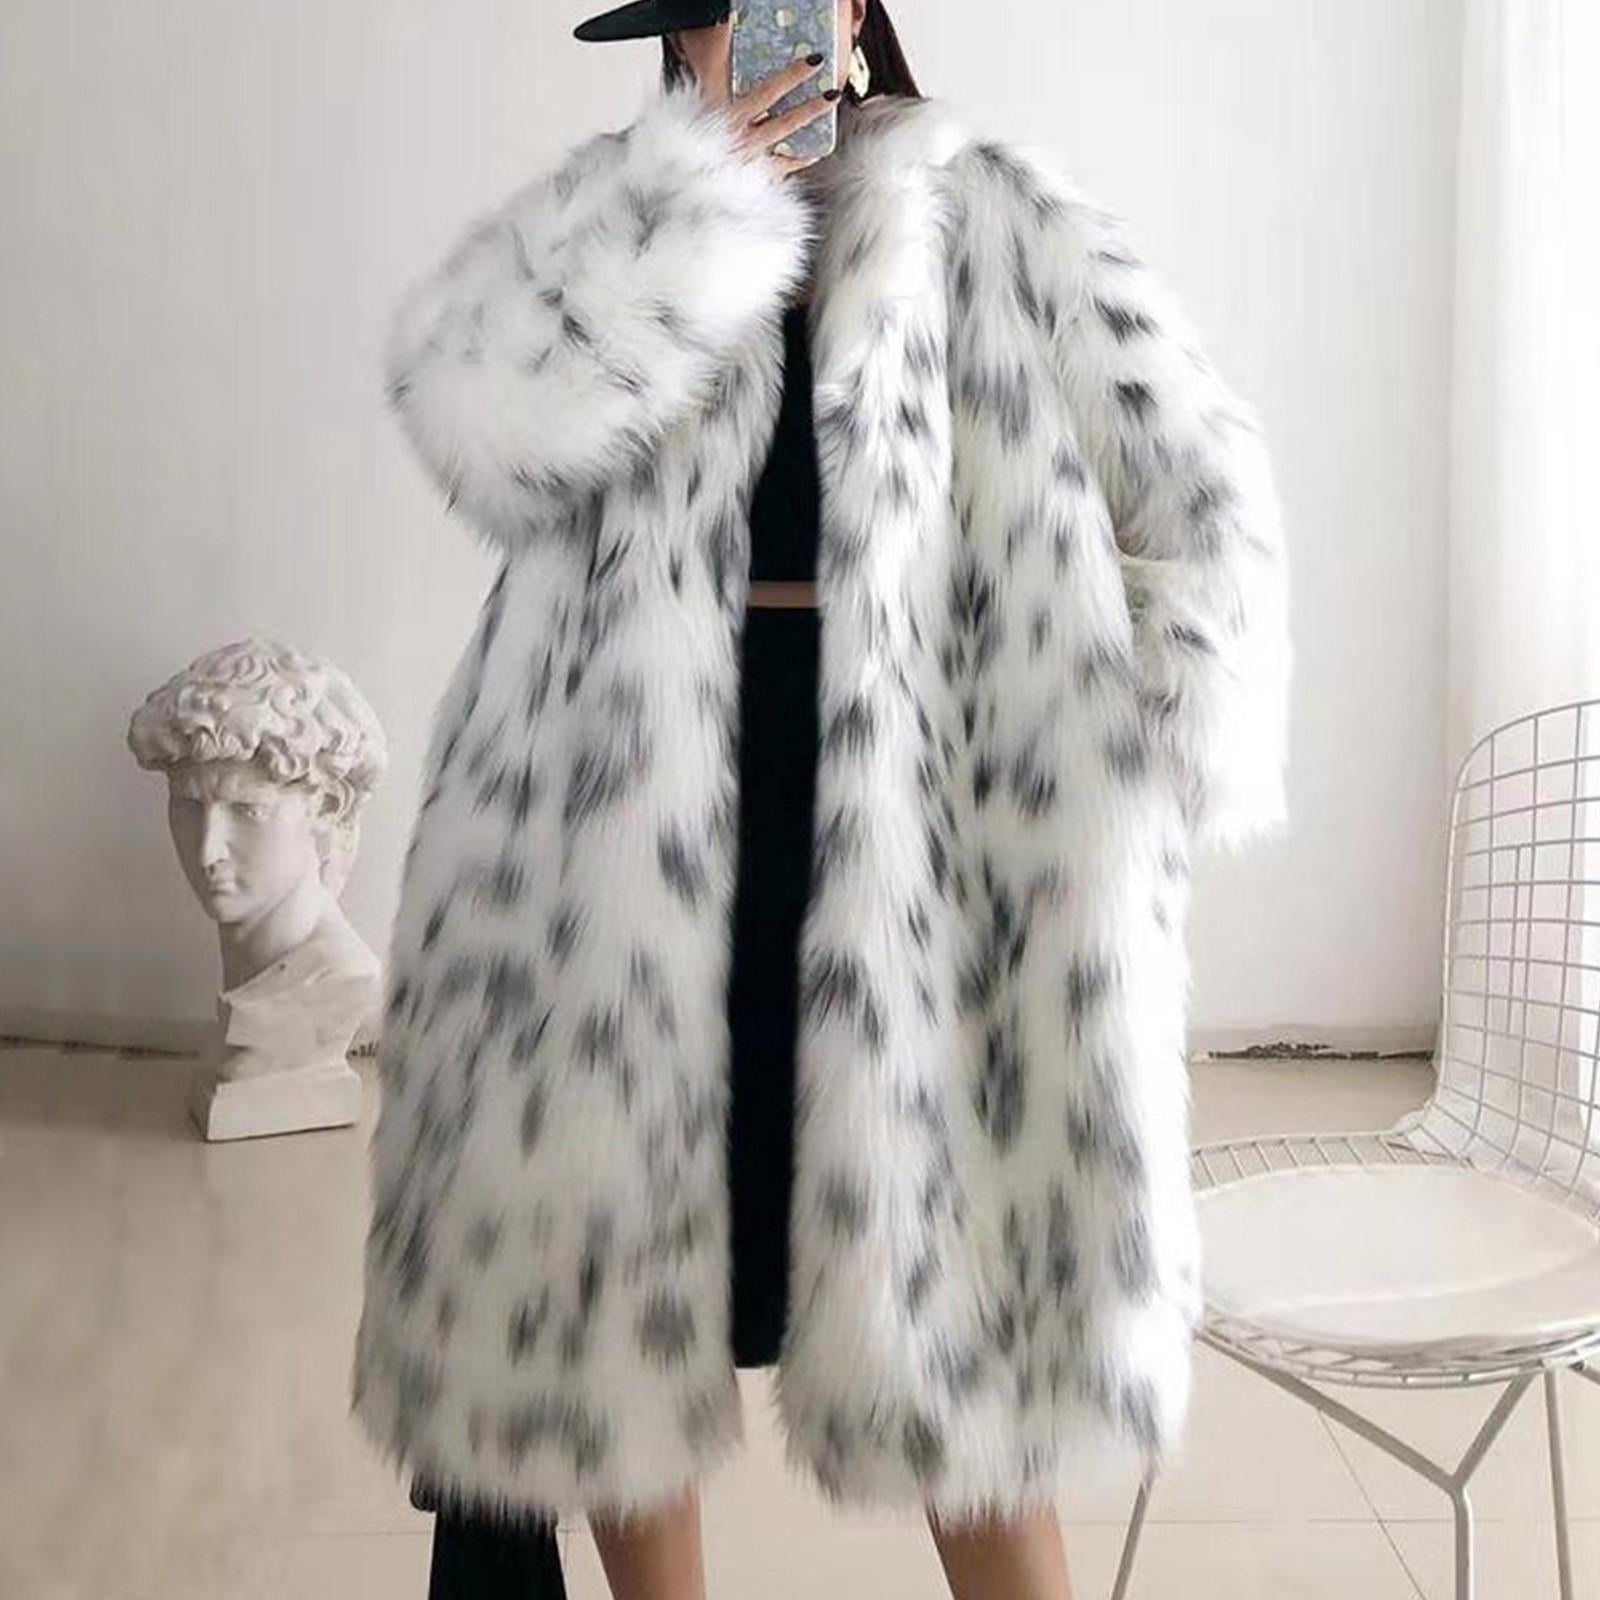 Tdoqot Faux Fur Long Coats for Women- Luxurious Cardigan Jackets Warm ...